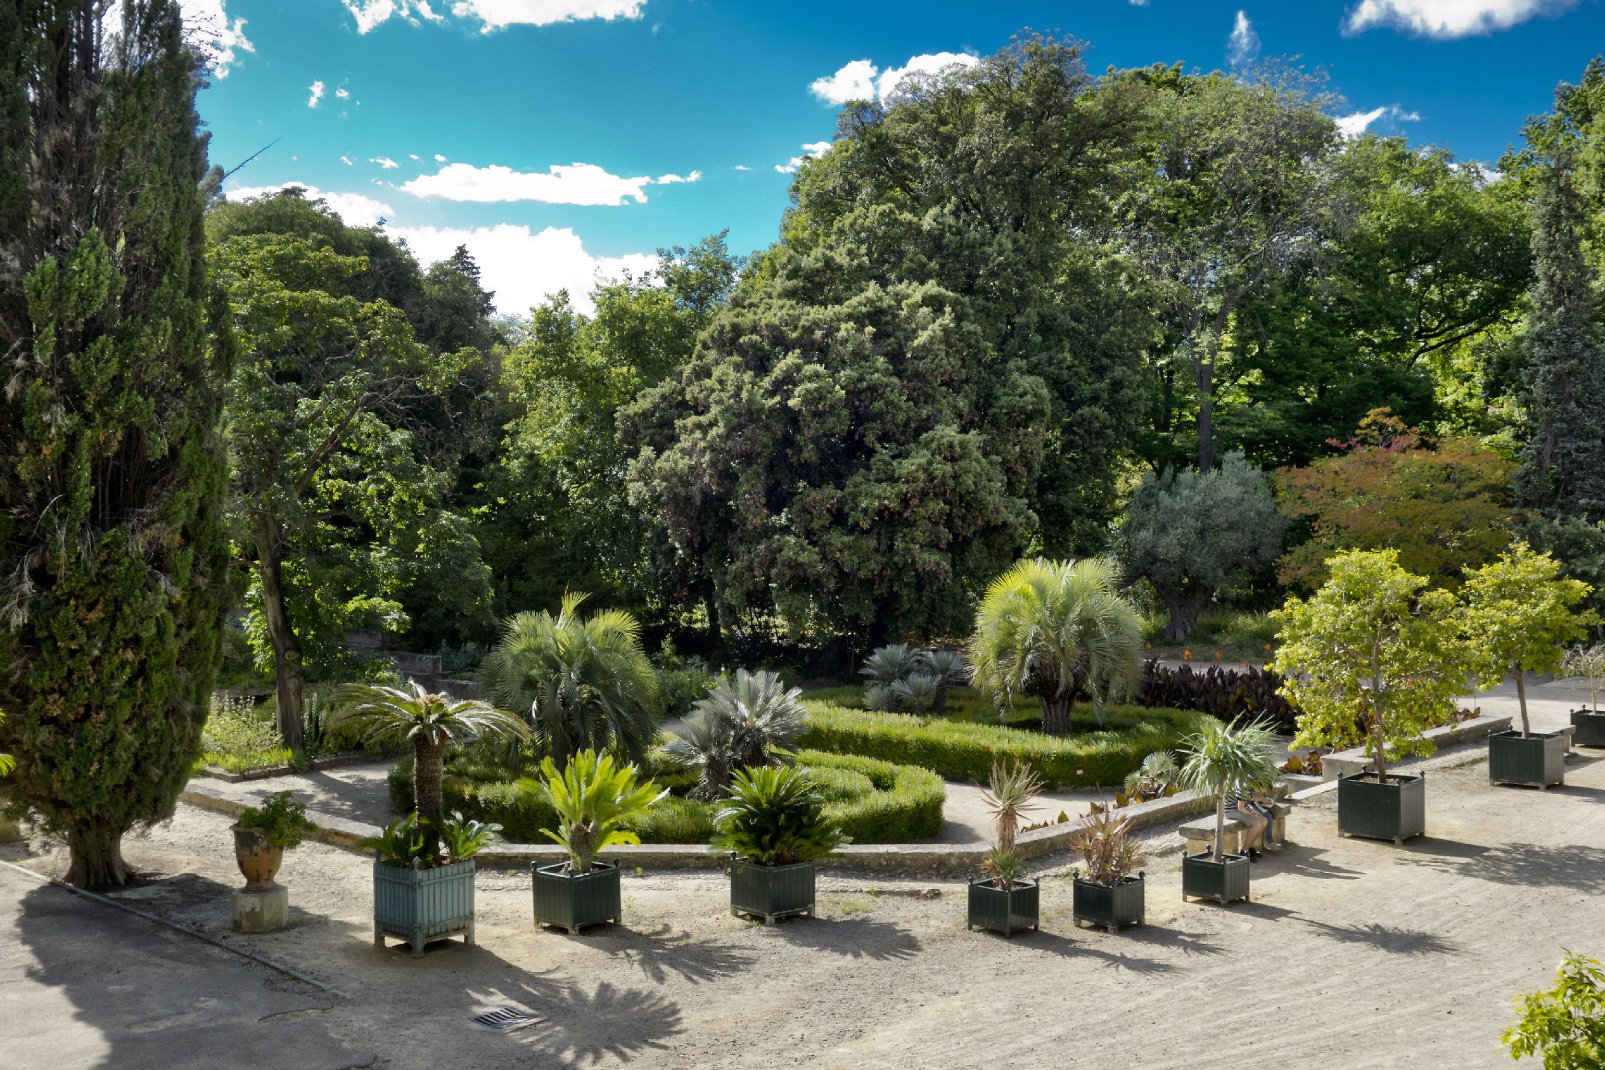 Le jardin botanique est un havre de tranquillité à Montpellier, un endroit où flâner seul, en amoureux ou entre amis.